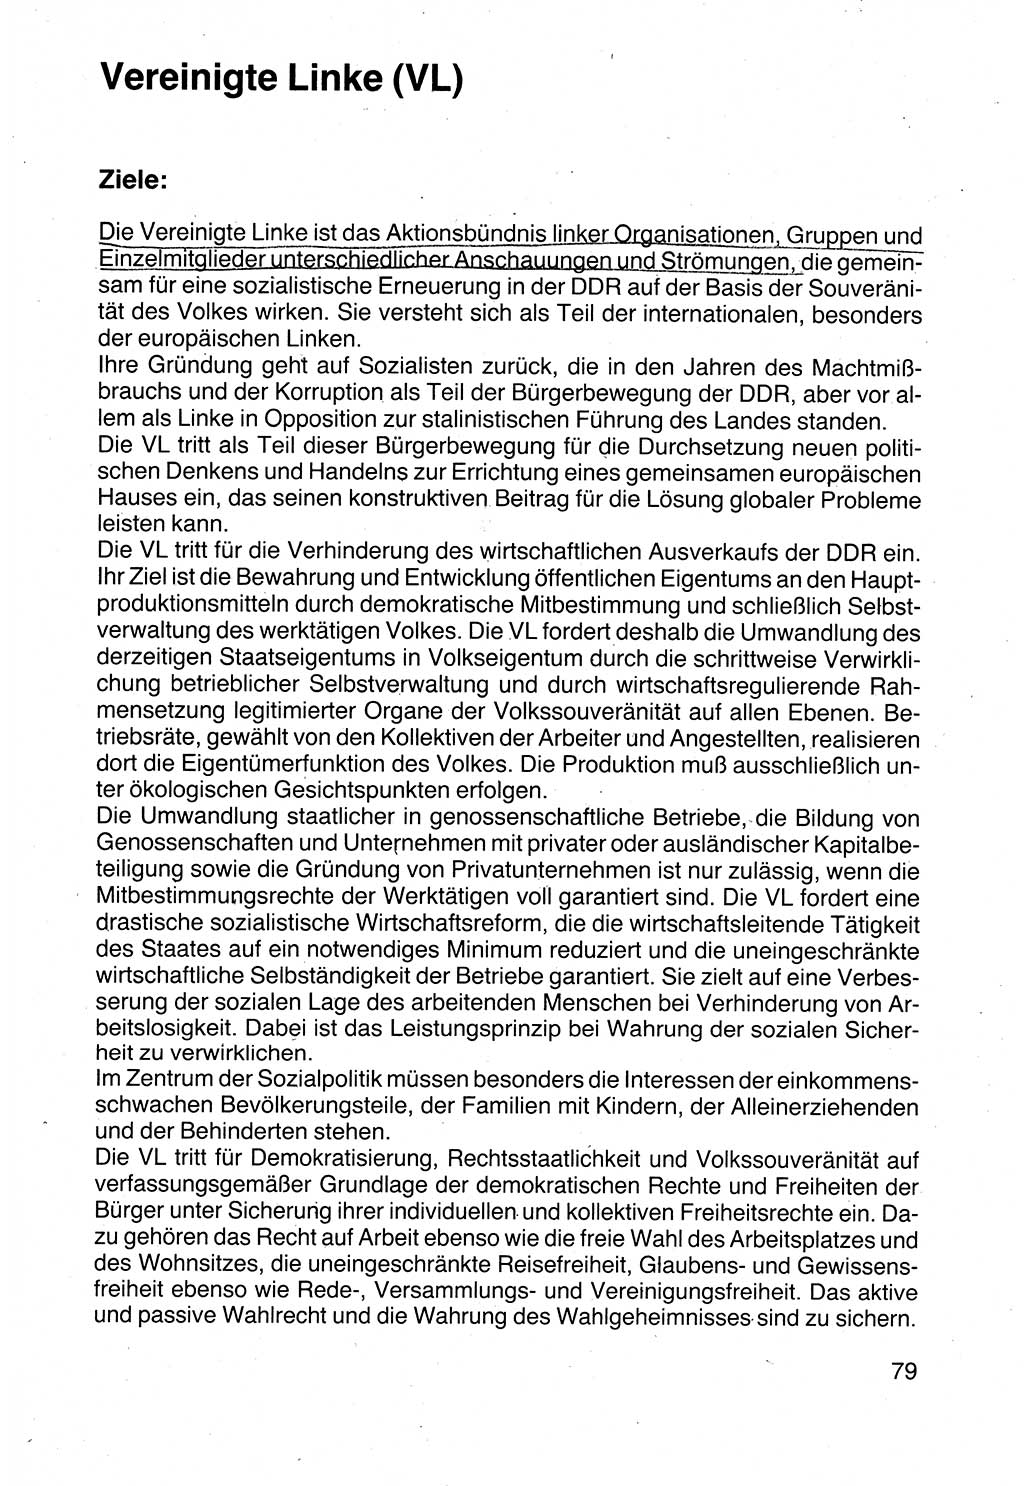 Politische Parteien und Bewegungen der DDR (Deutsche Demokratische Republik) über sich selbst 1990, Seite 79 (Pol. Part. Bew. DDR 1990, S. 79)